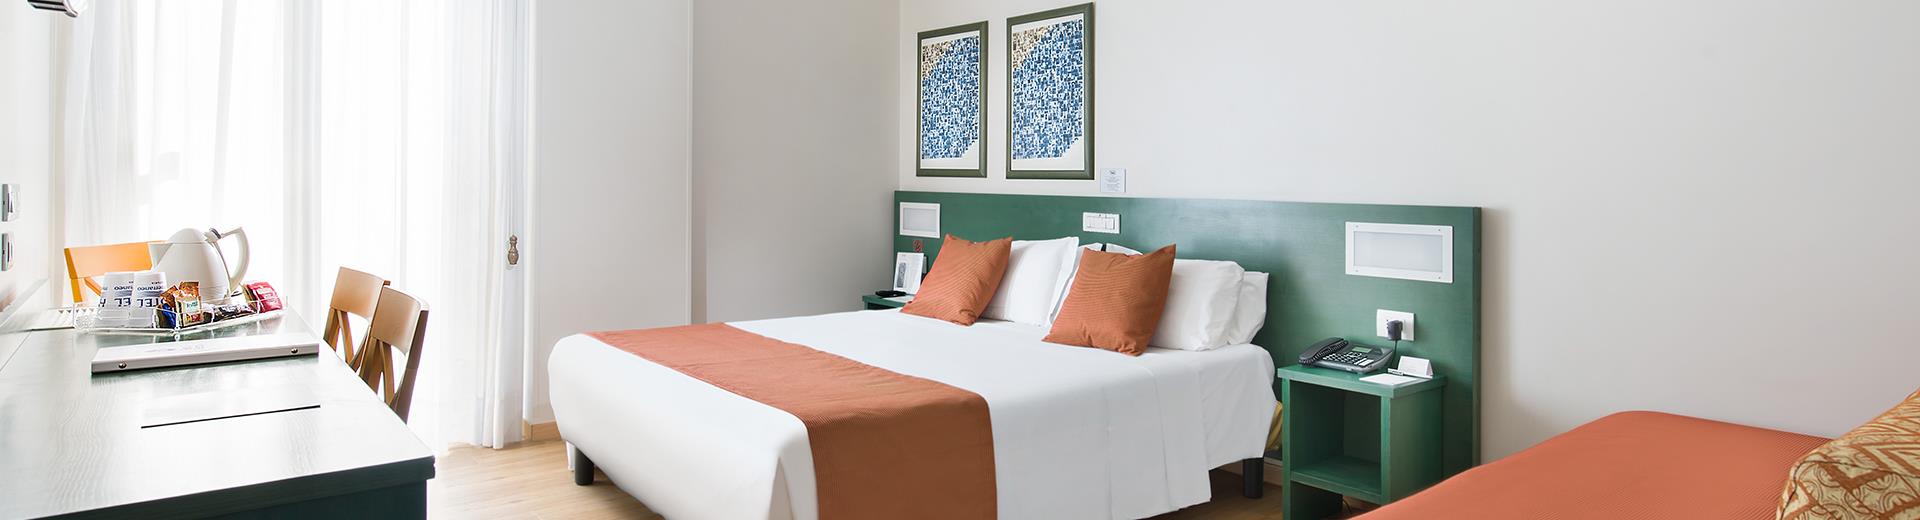 Scopri il comfort delle camere di Hotel Mediterraneo, confortevole ed accogliente 3 stelle a Catania.